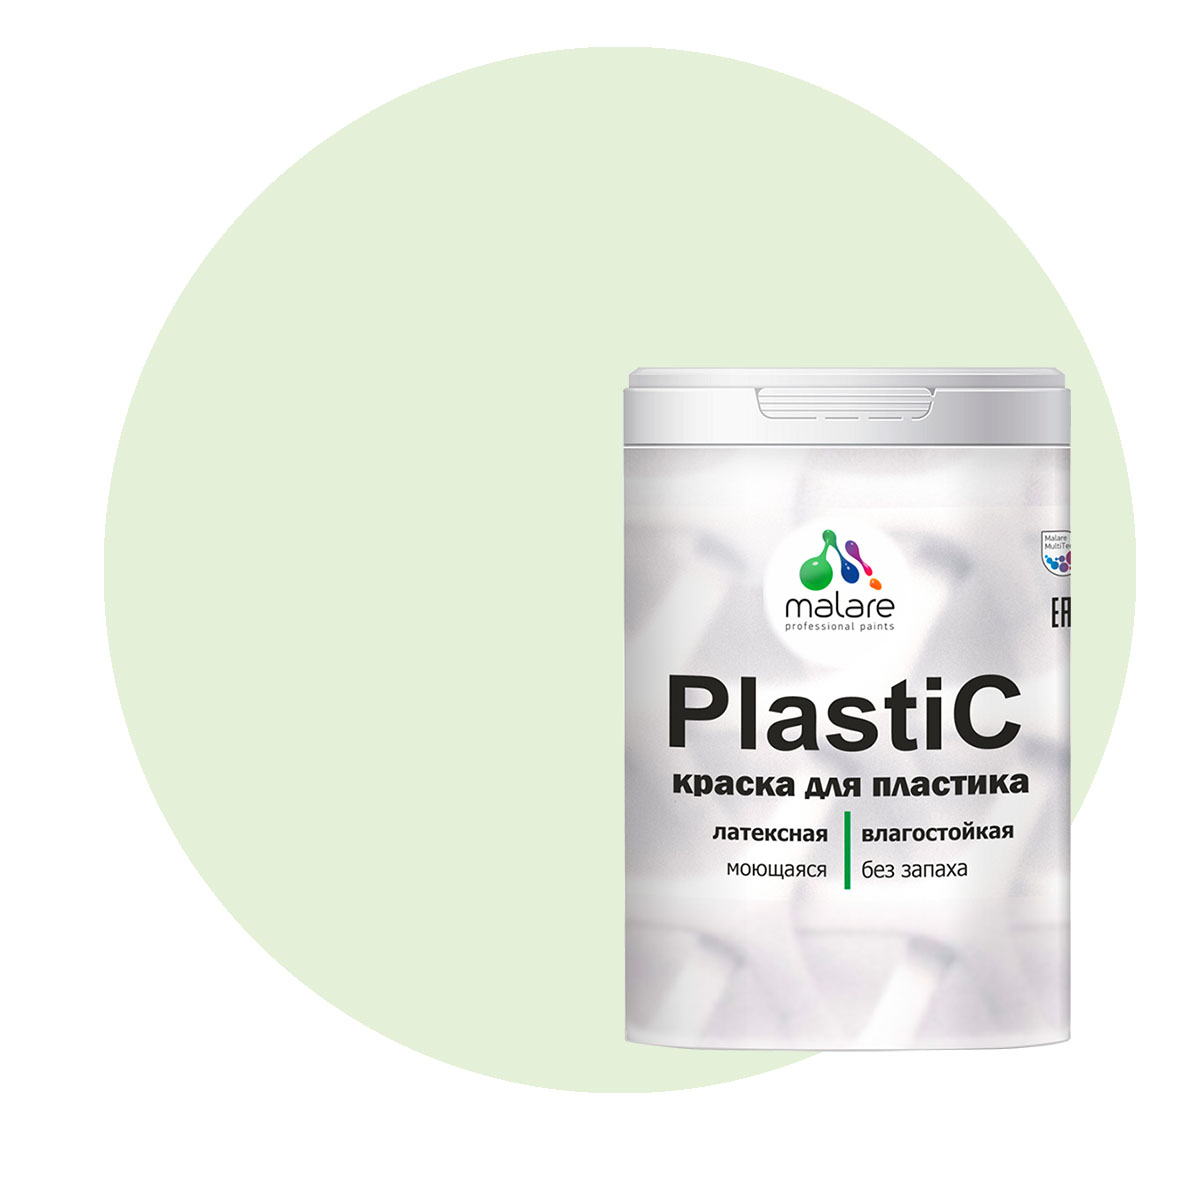 Краска Malare PlastiC для пластика, ПВХ, для сайдинга, светло-зеленый 2 кг. краска malare plastic для пластика пвх для сайдинга зеленый мичиган 2 кг